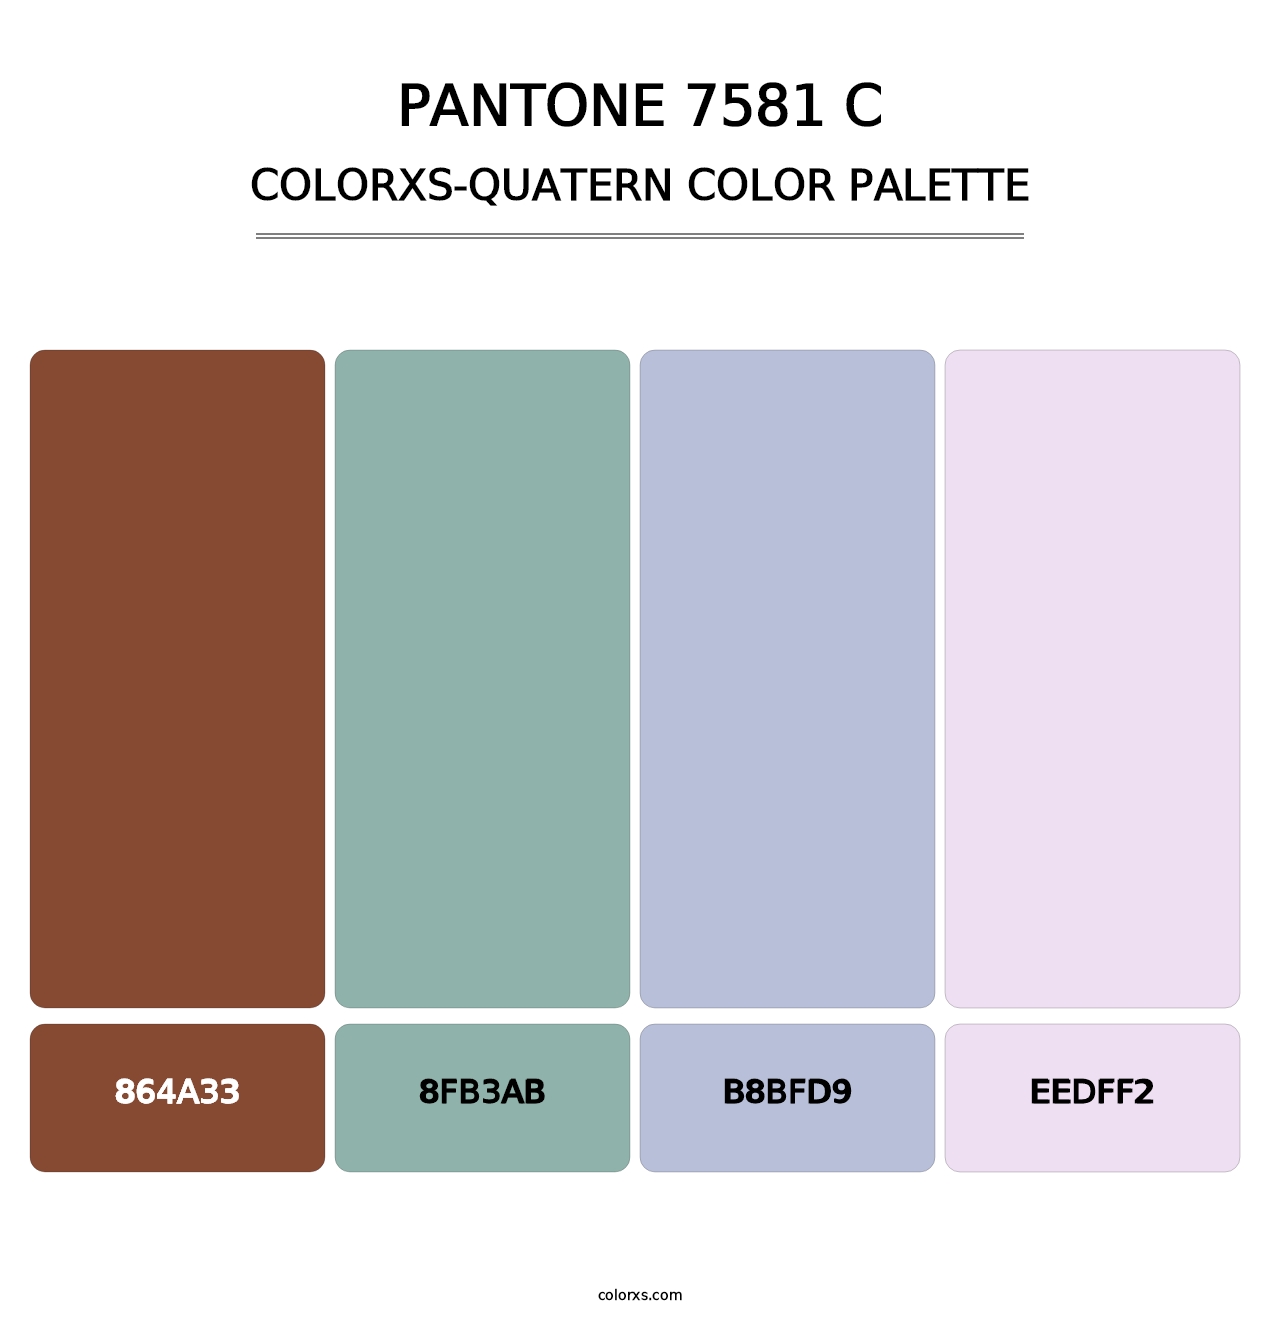 PANTONE 7581 C - Colorxs Quatern Palette